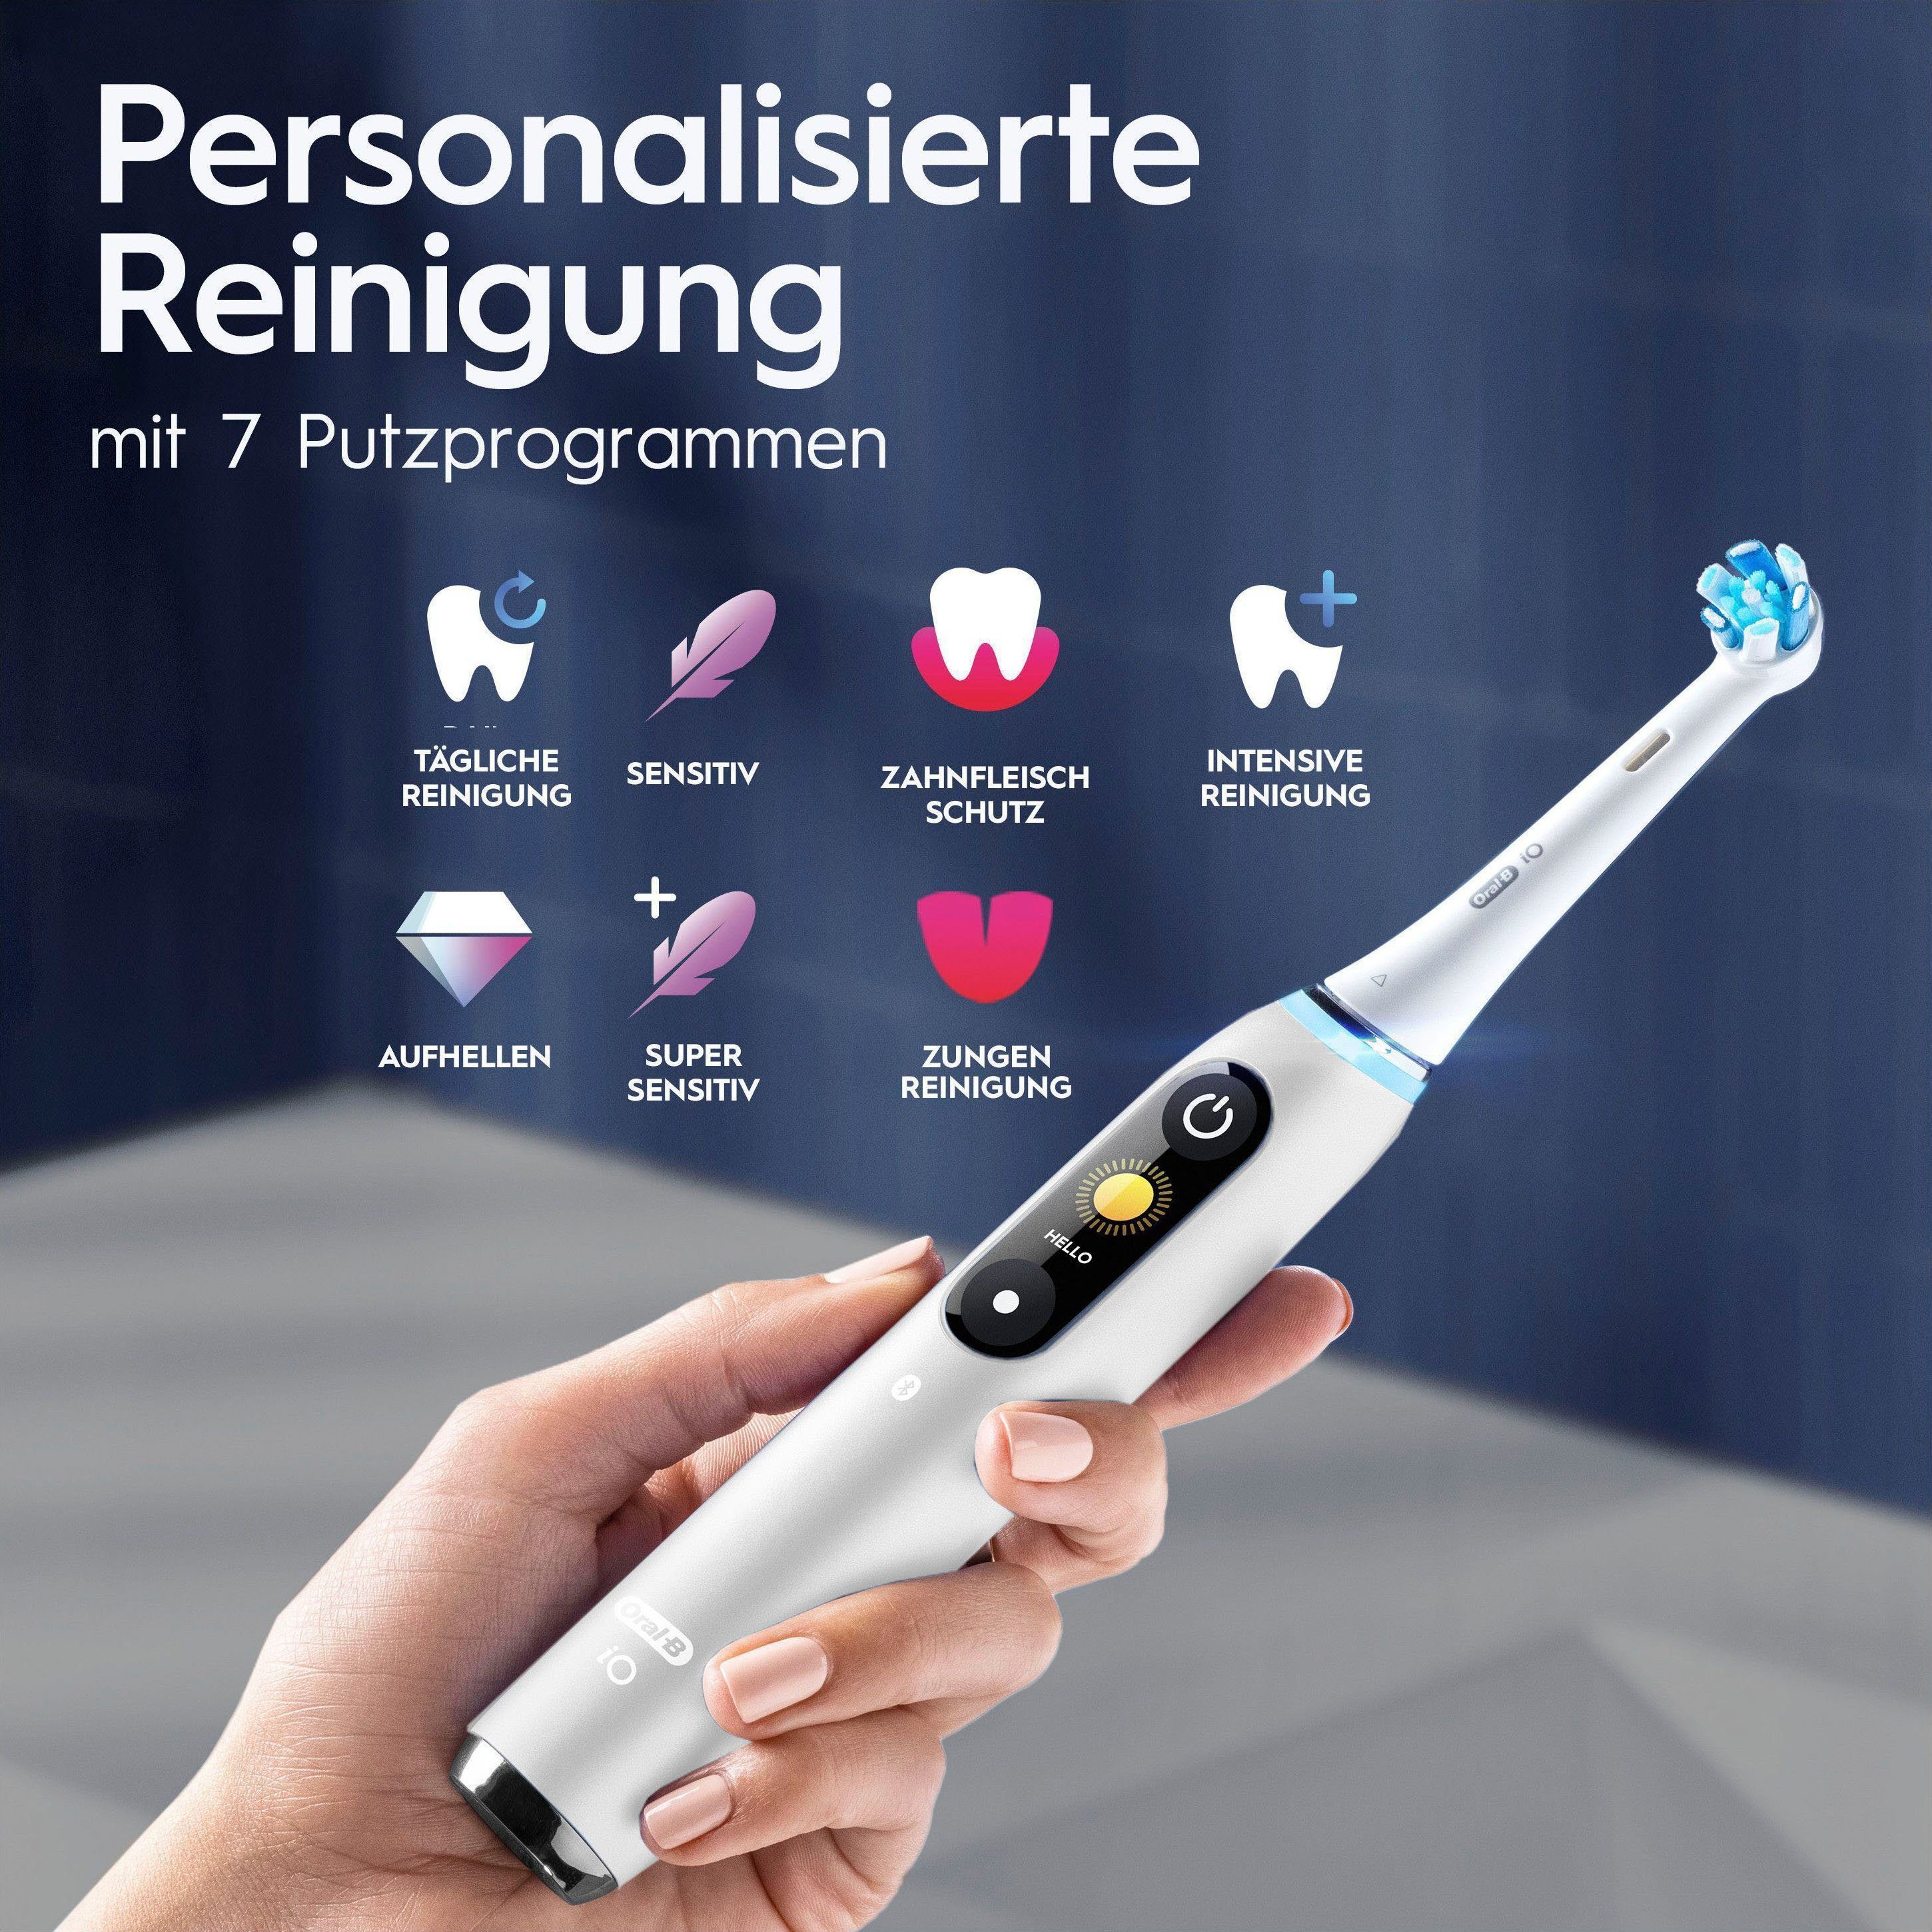 Oral-B Elektrische Putzmodi, 2 Aufsteckbürsten: mit Magnet-Technologie, Zahnbürste Lade-Reiseetui White & Farbdisplay 9, Alabaster 7 St., iO